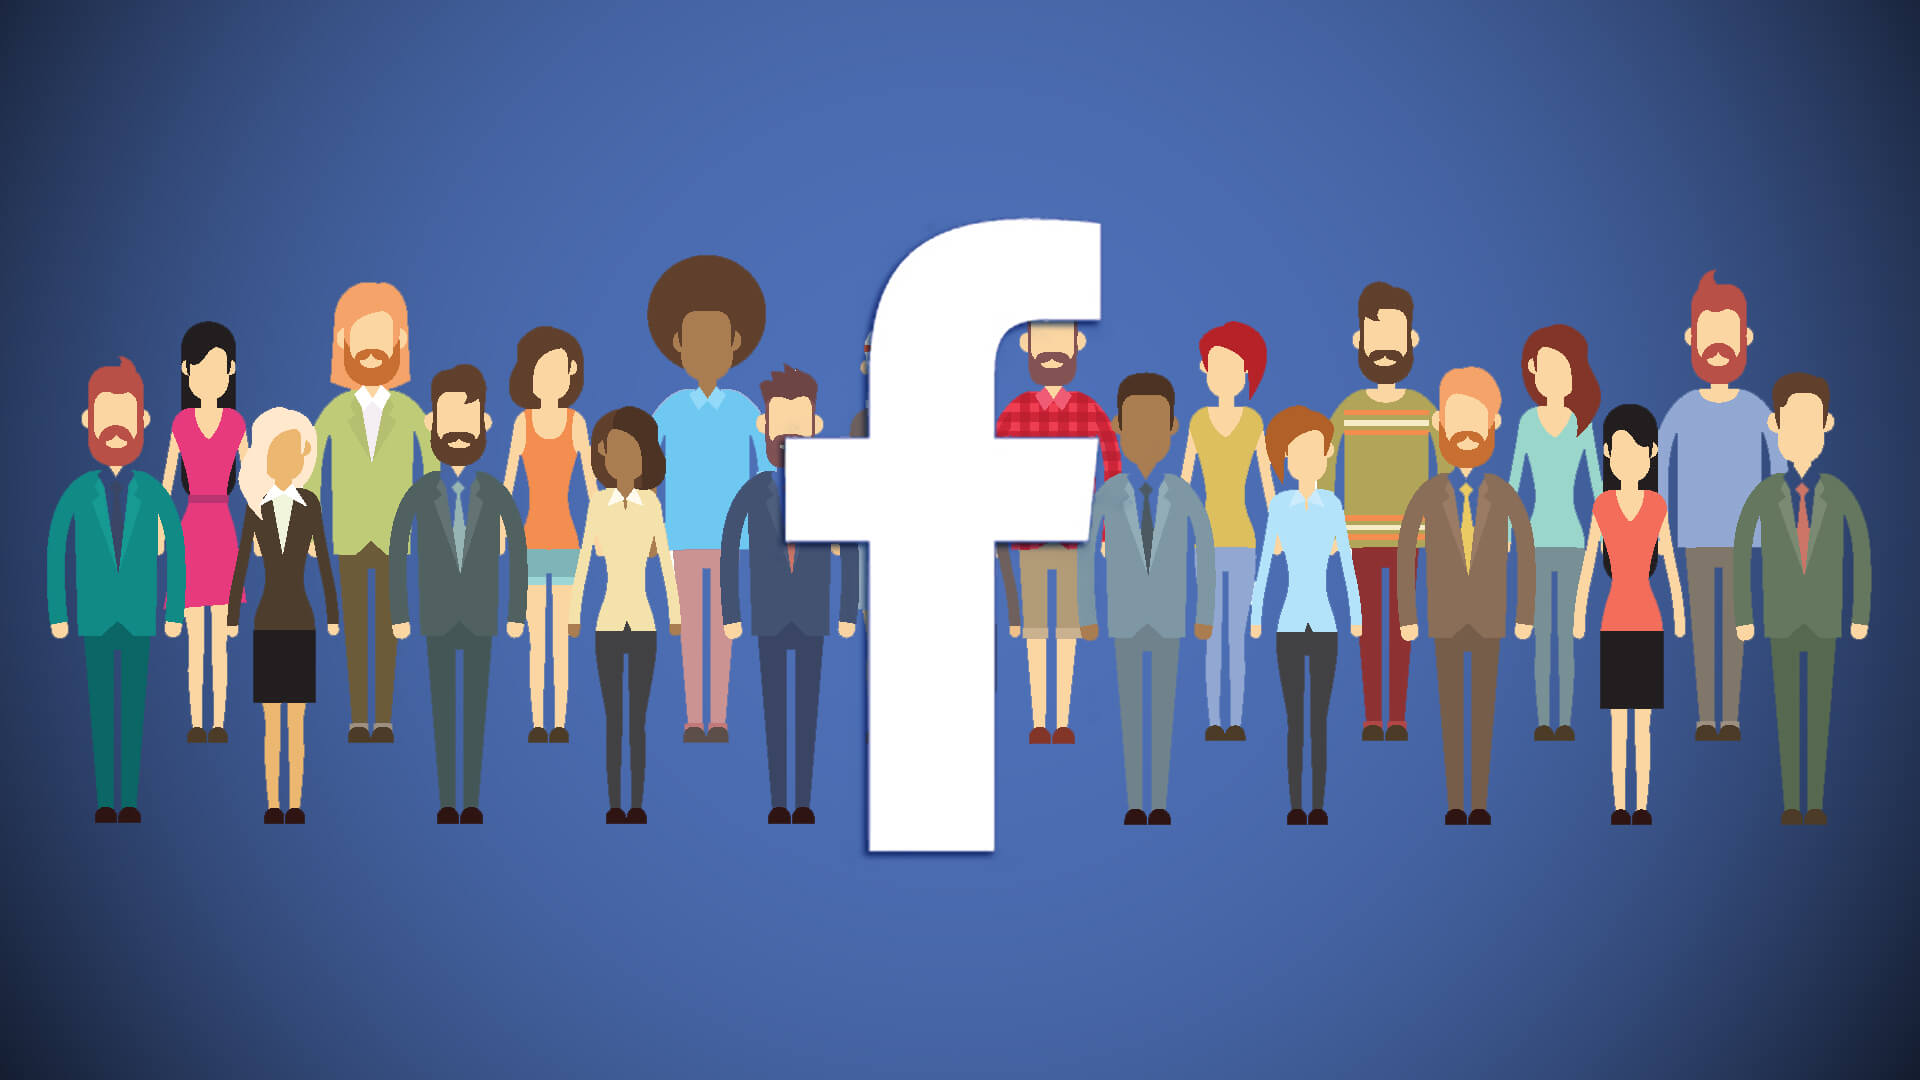 facebook-users-people-diversity1-ss-1920.jpg